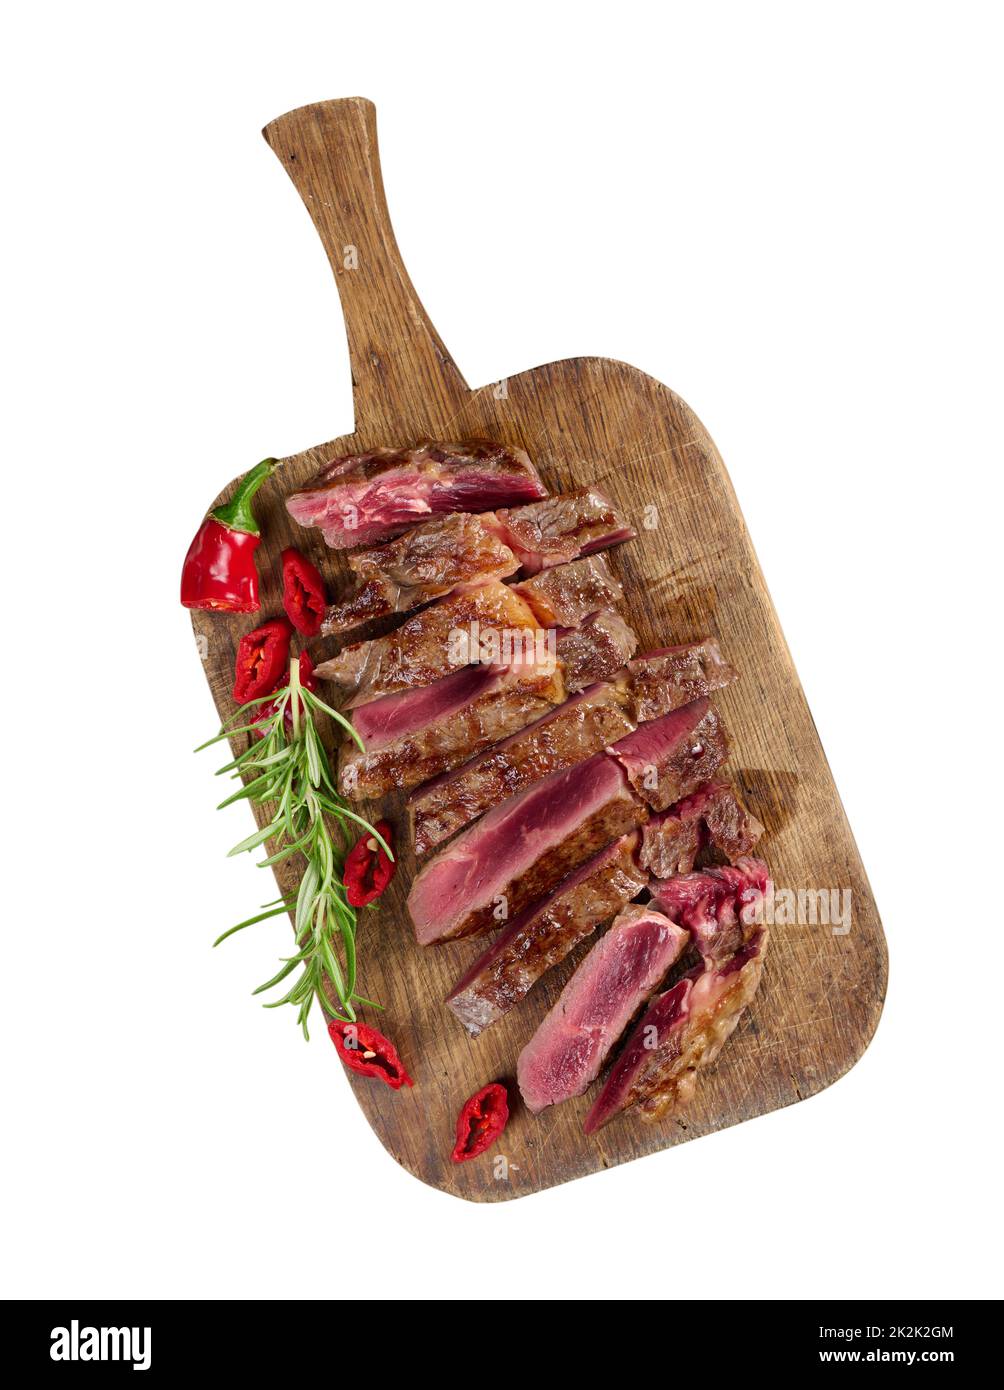 morceau de bœuf rôti coupé en morceaux sur une planche à découper brun vintage, rare donaité. Délicieux steak Banque D'Images